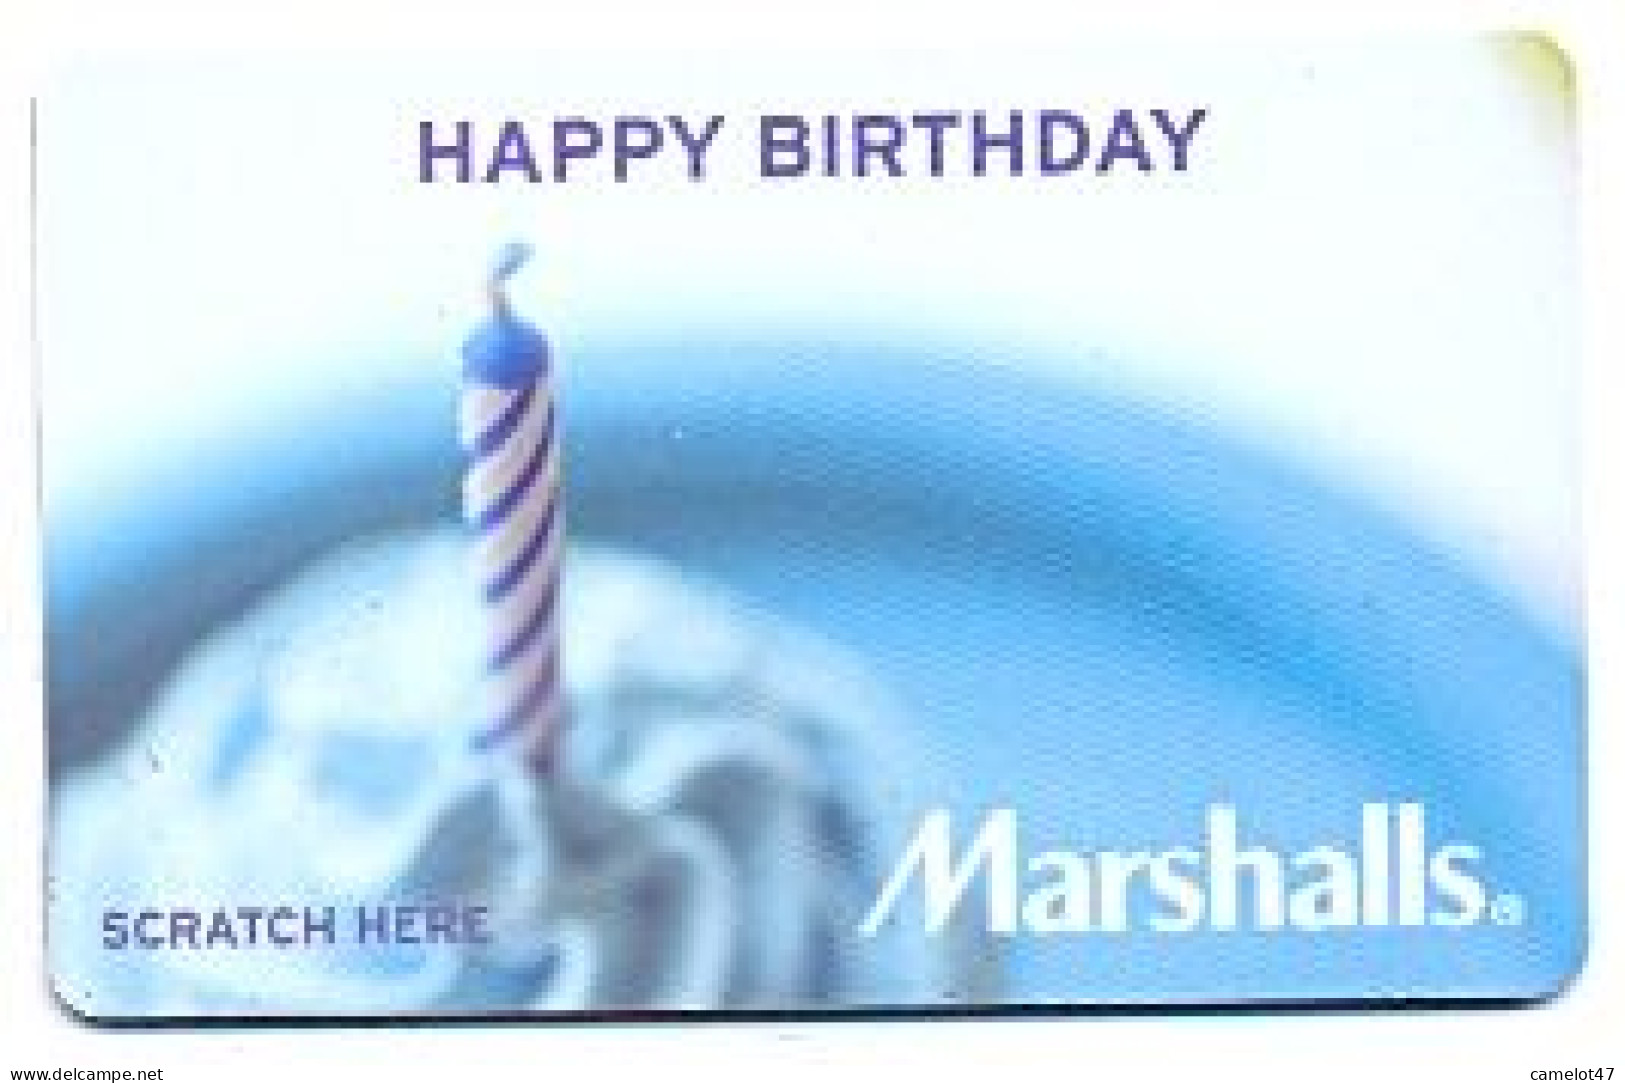 Marshalls, U.S.A., Carte Cadeau Pour Collection, Sans Valeur, # Marshalls-32 - Cadeaubonnen En Spaarkaarten